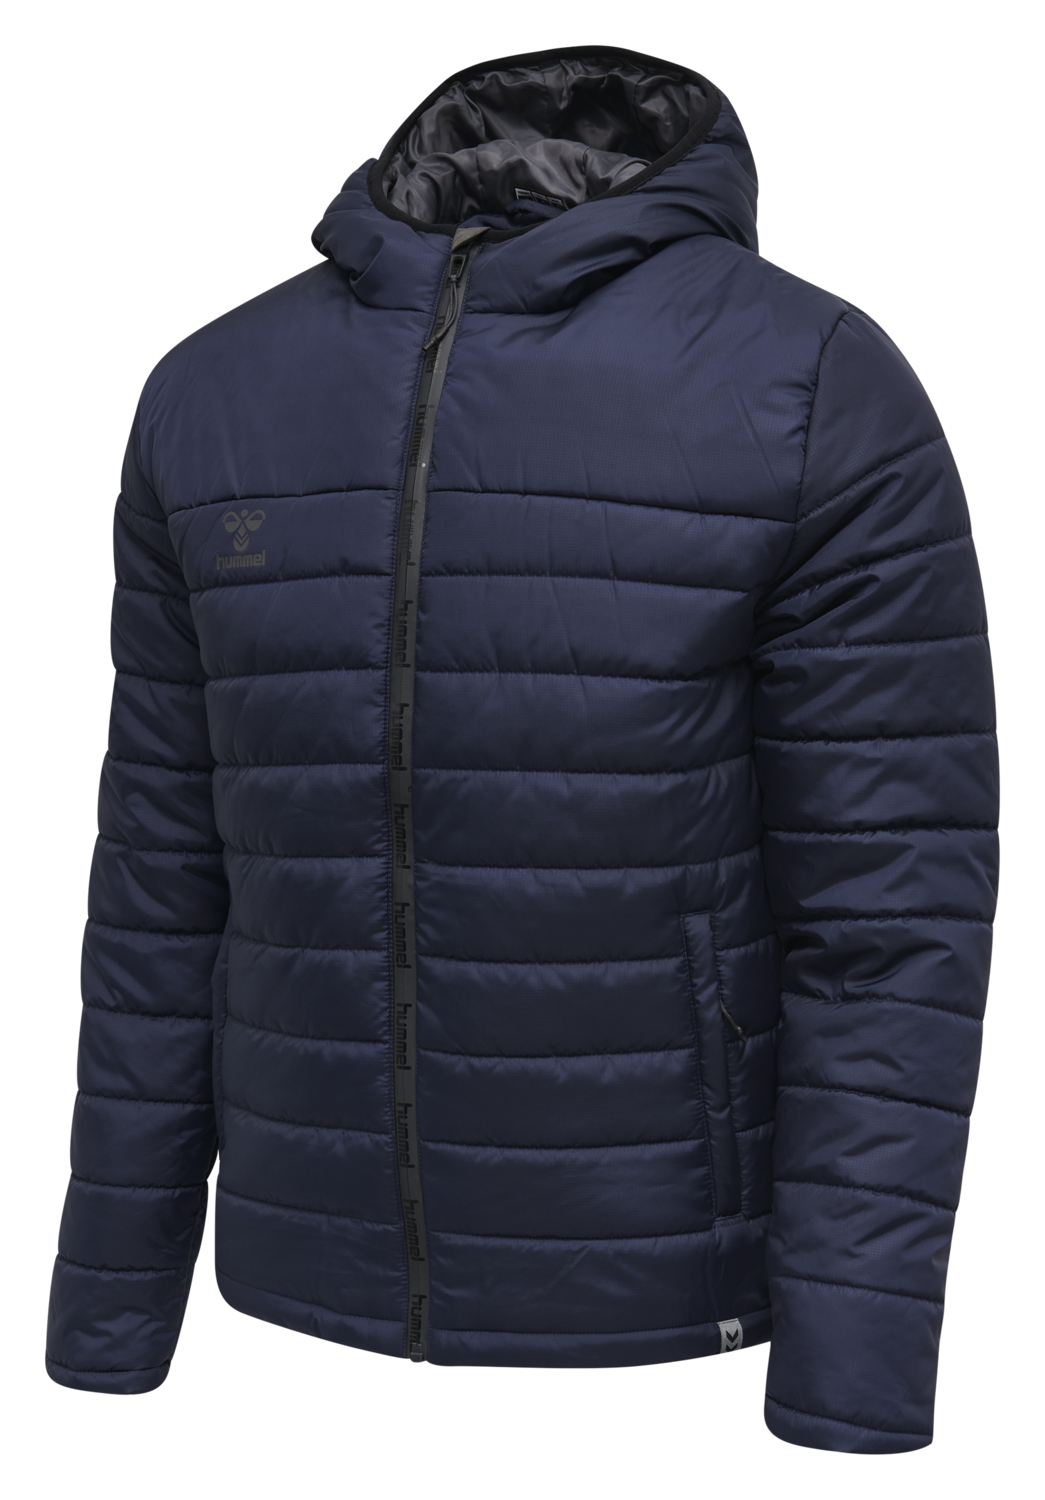 Куртка мужская Hummel 206687 синяя M